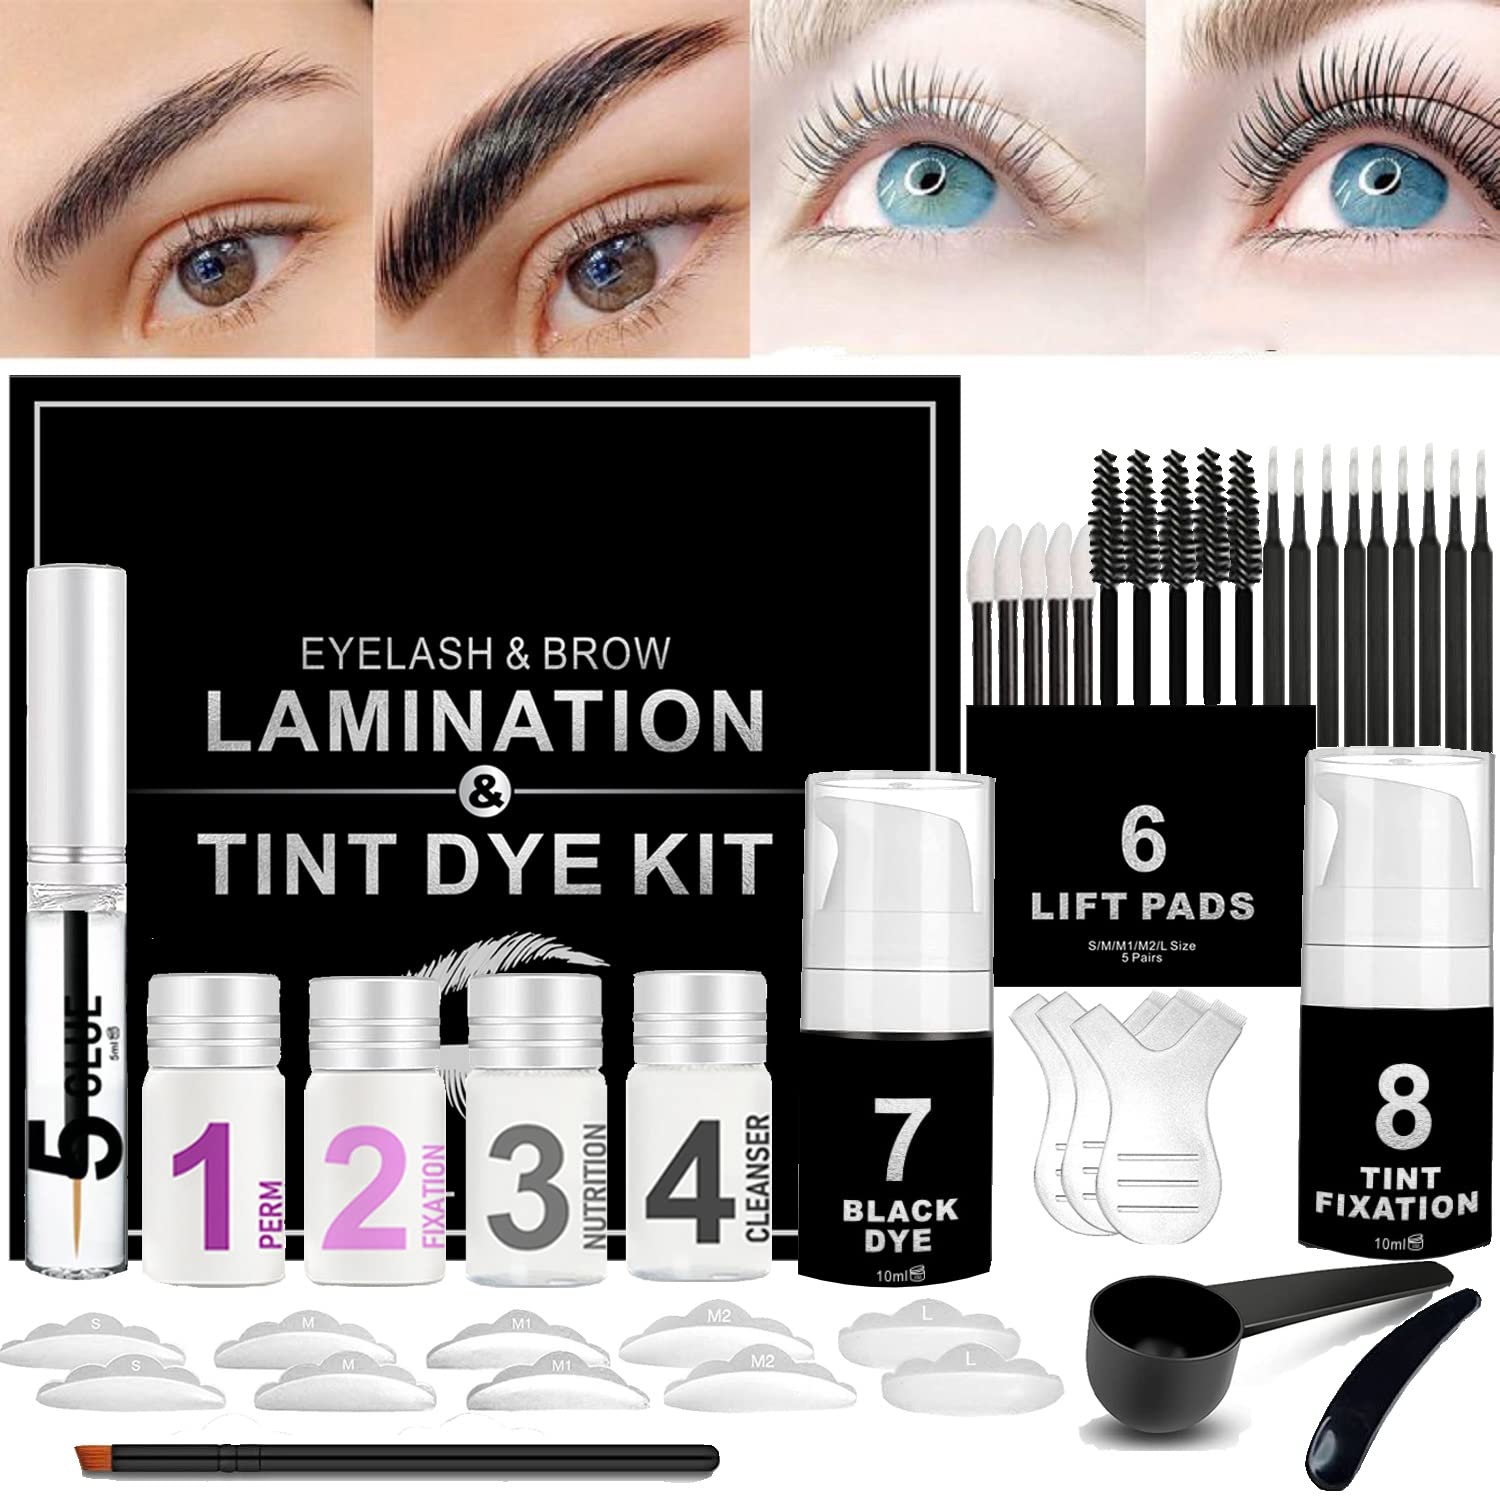 Lucoss Eyelash Lifting Set, Eyelash Lamination Kit with Black Tint, Permanent Eyelashes and Eyebrow Kit, Eyelash Lifting Extension Kit, Eyelash Lifting Set Professional